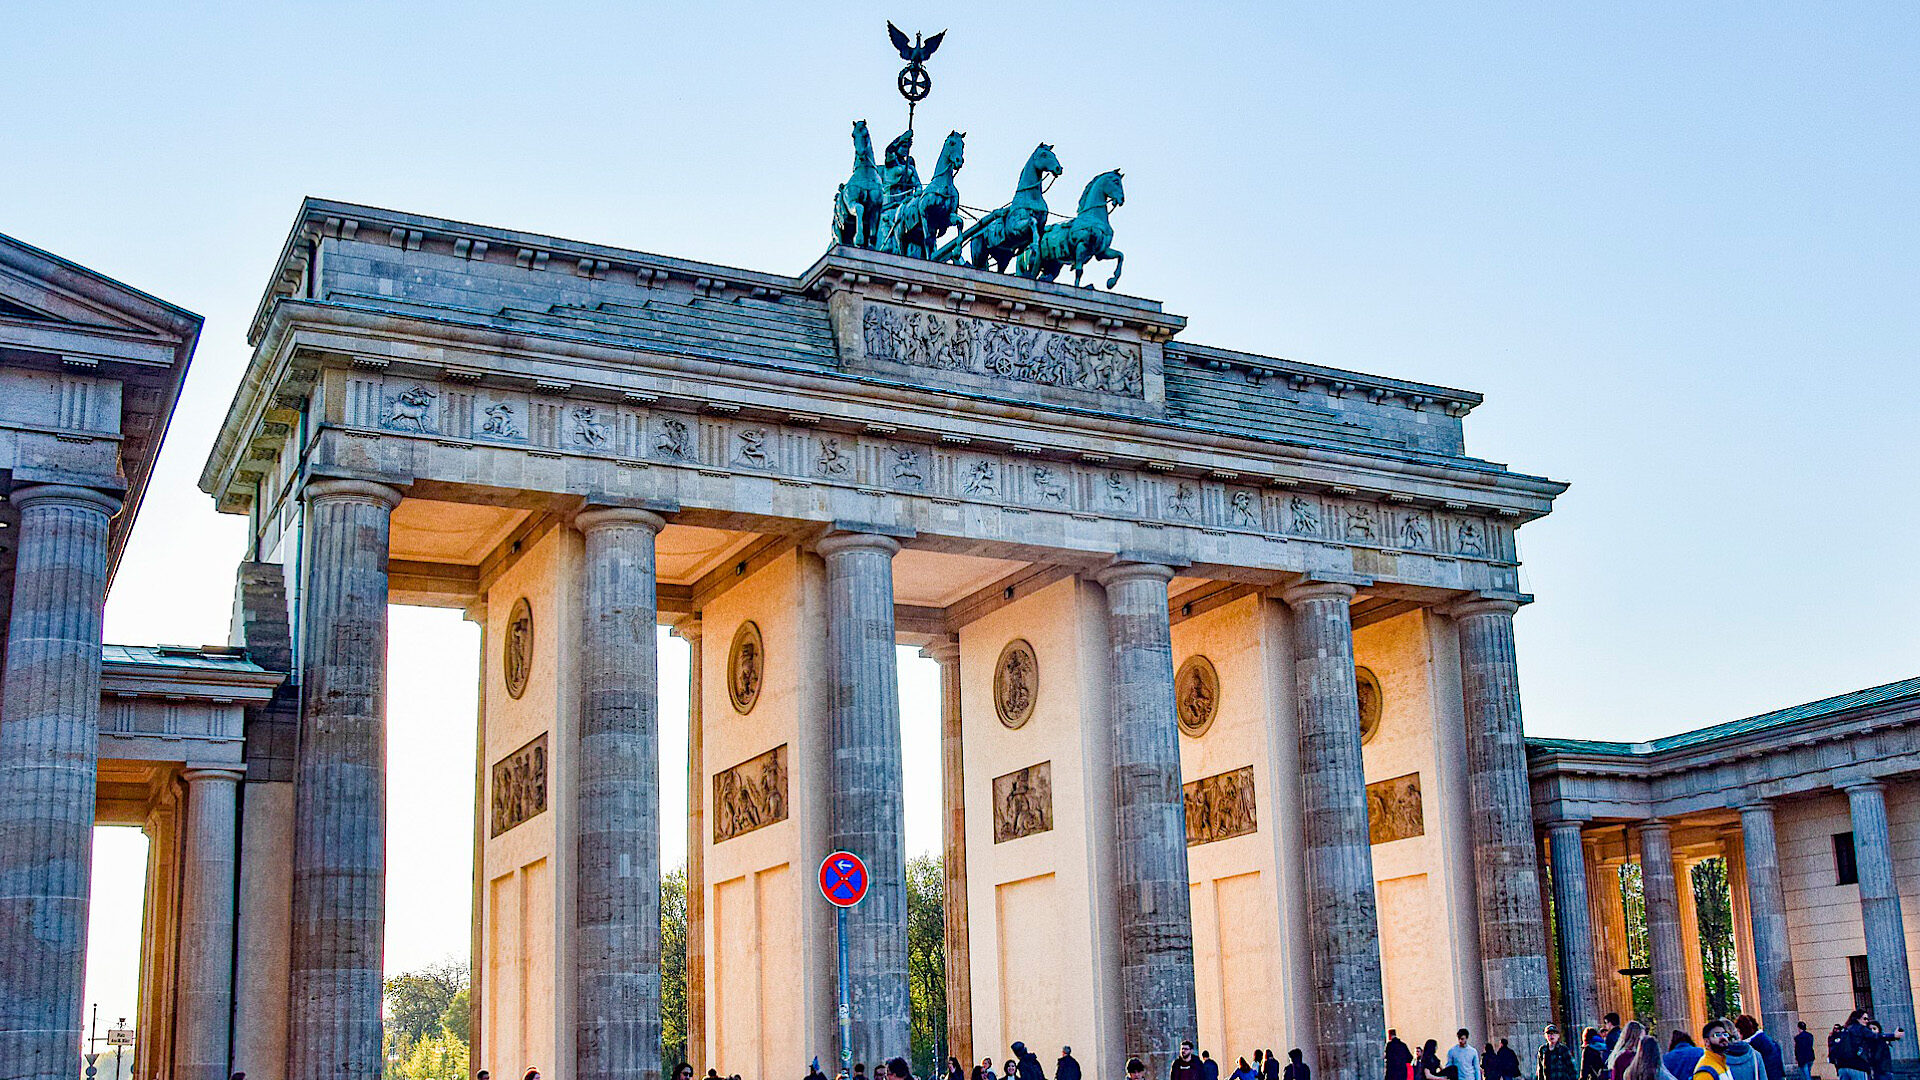 Brandenburger Tor i Berlin, Tyskland